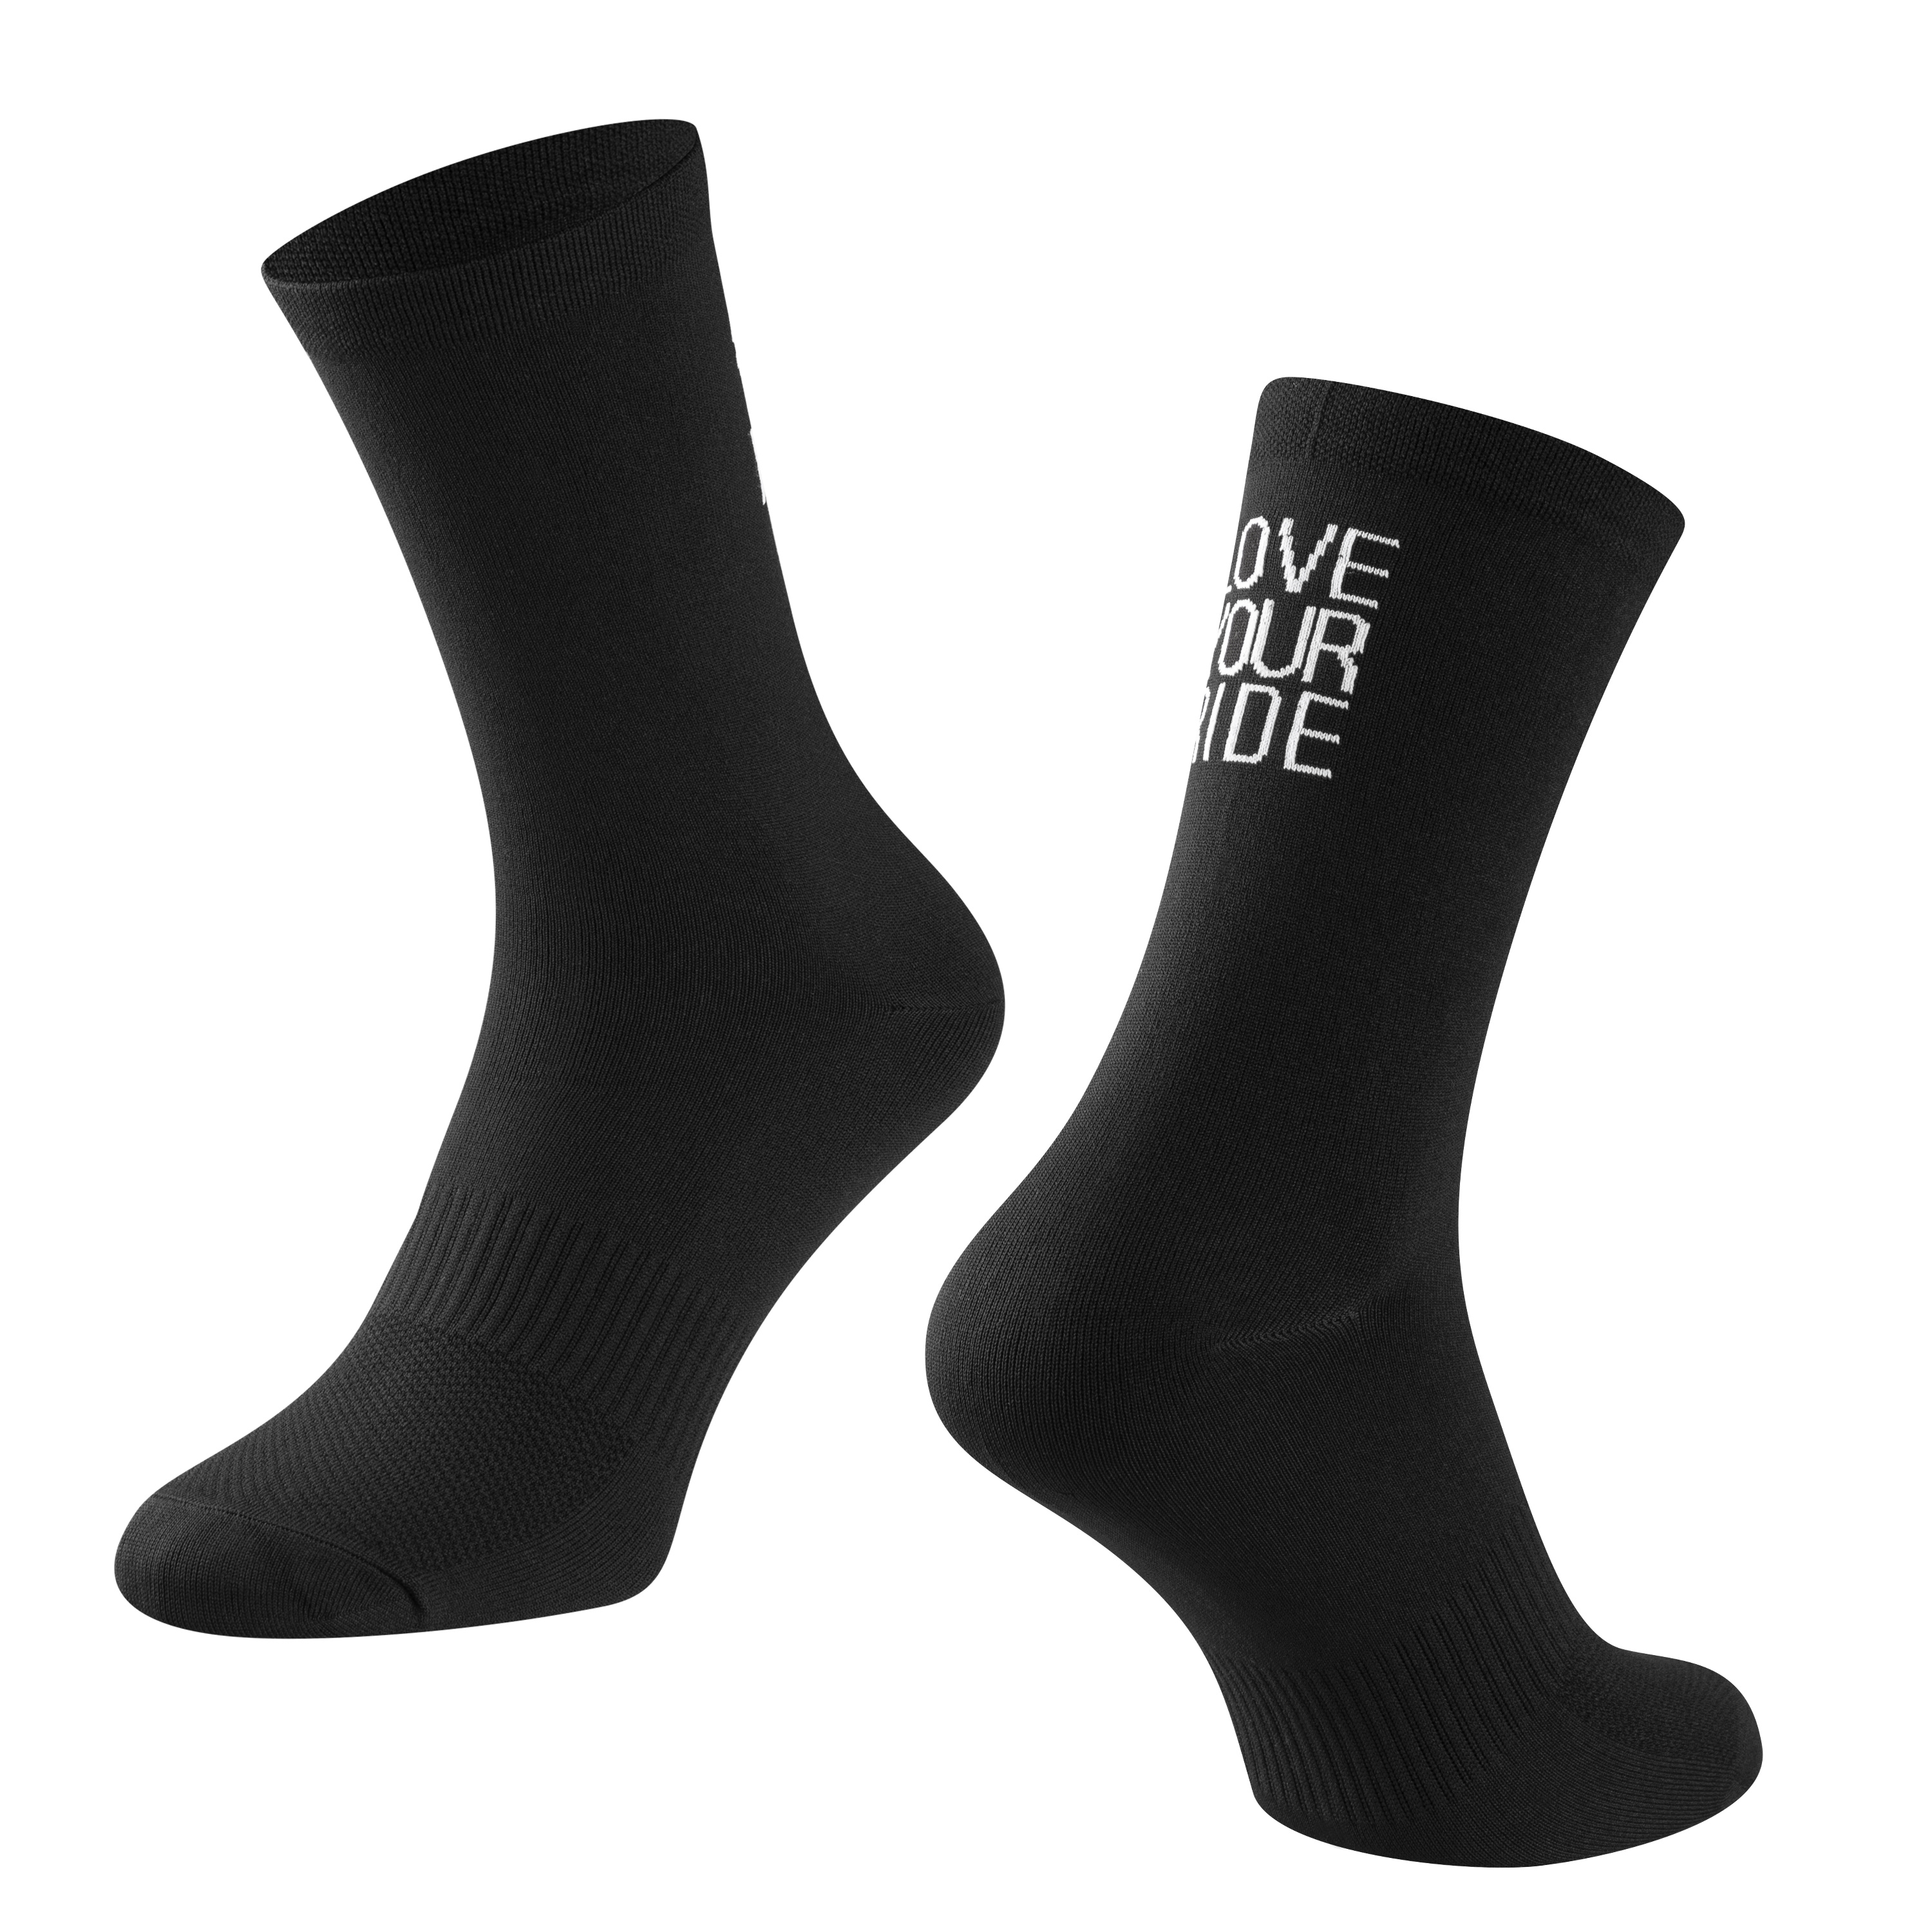 ponožky FORCE LOVE YOUR RIDE, černé S-M/36-41 Velikost: S-M